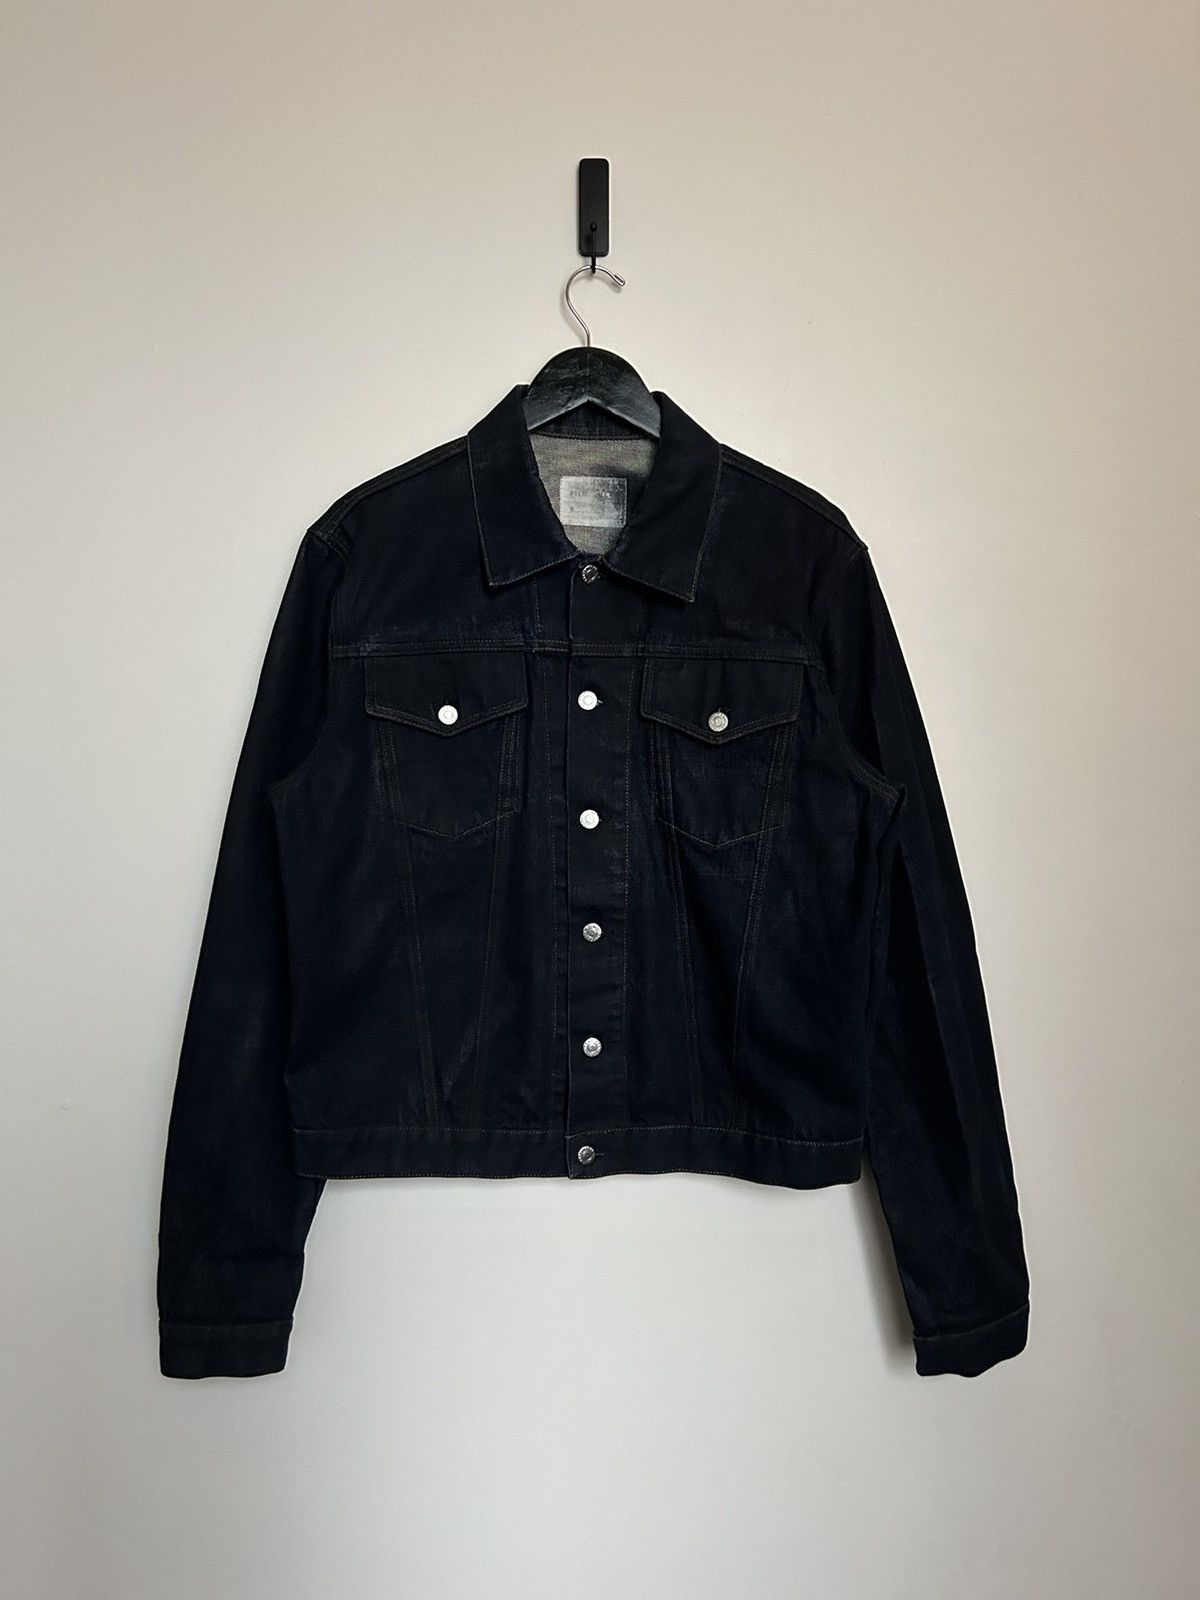 発売 Helmut lang black coating denim jackets | tradingholders.com